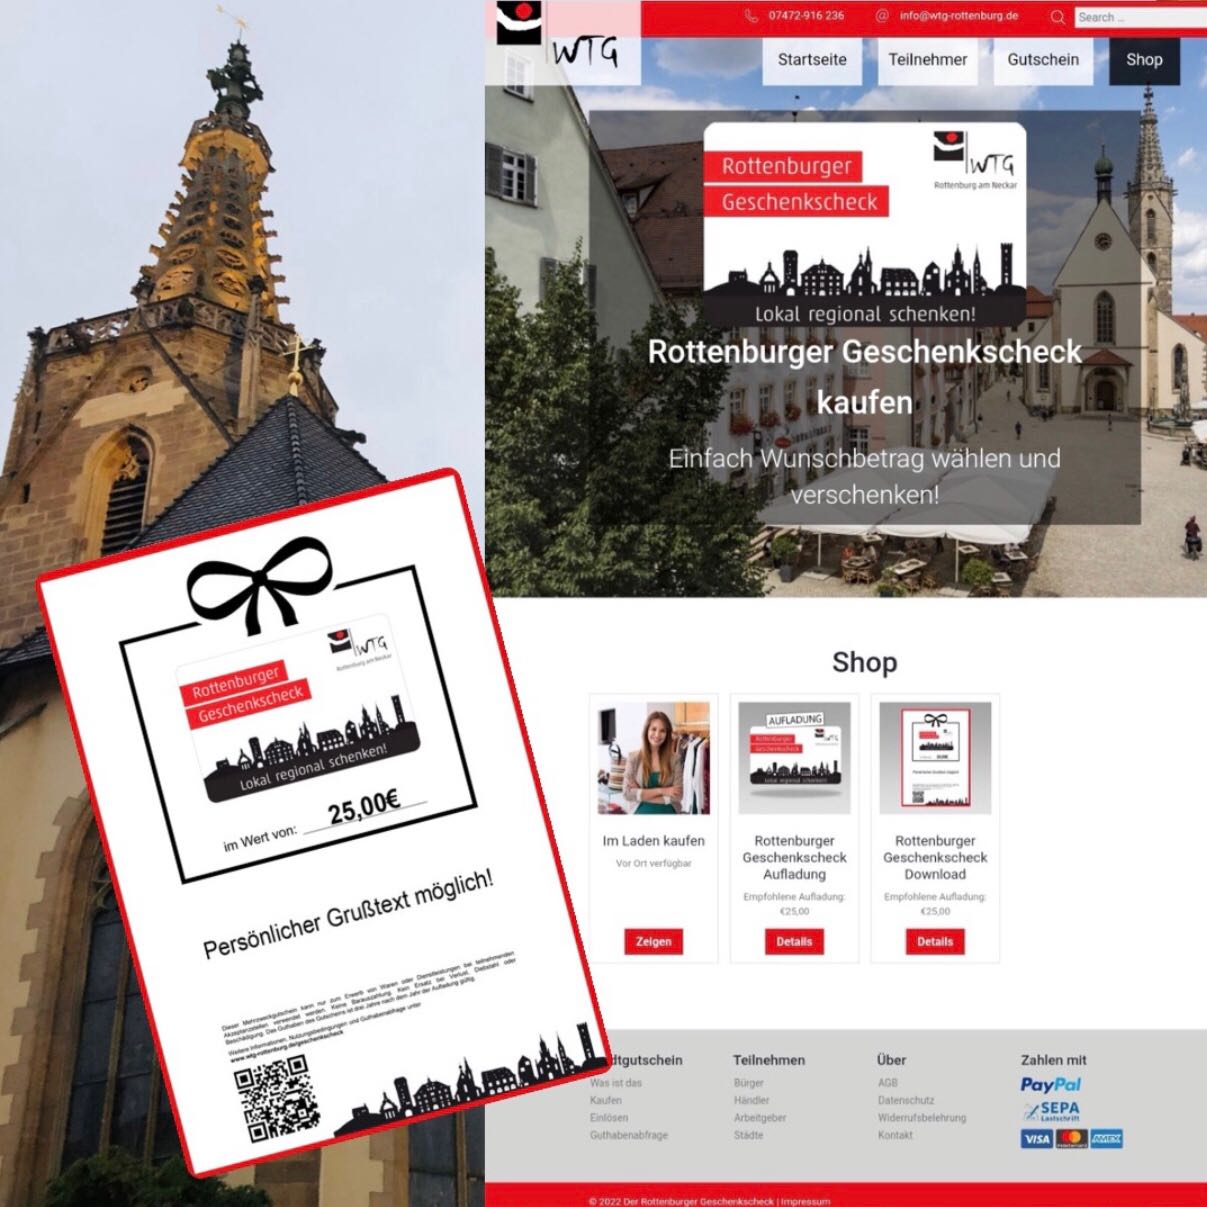 Bildschirmfoto vom Online Shop, Gutschein und im Hintergrund der Dom